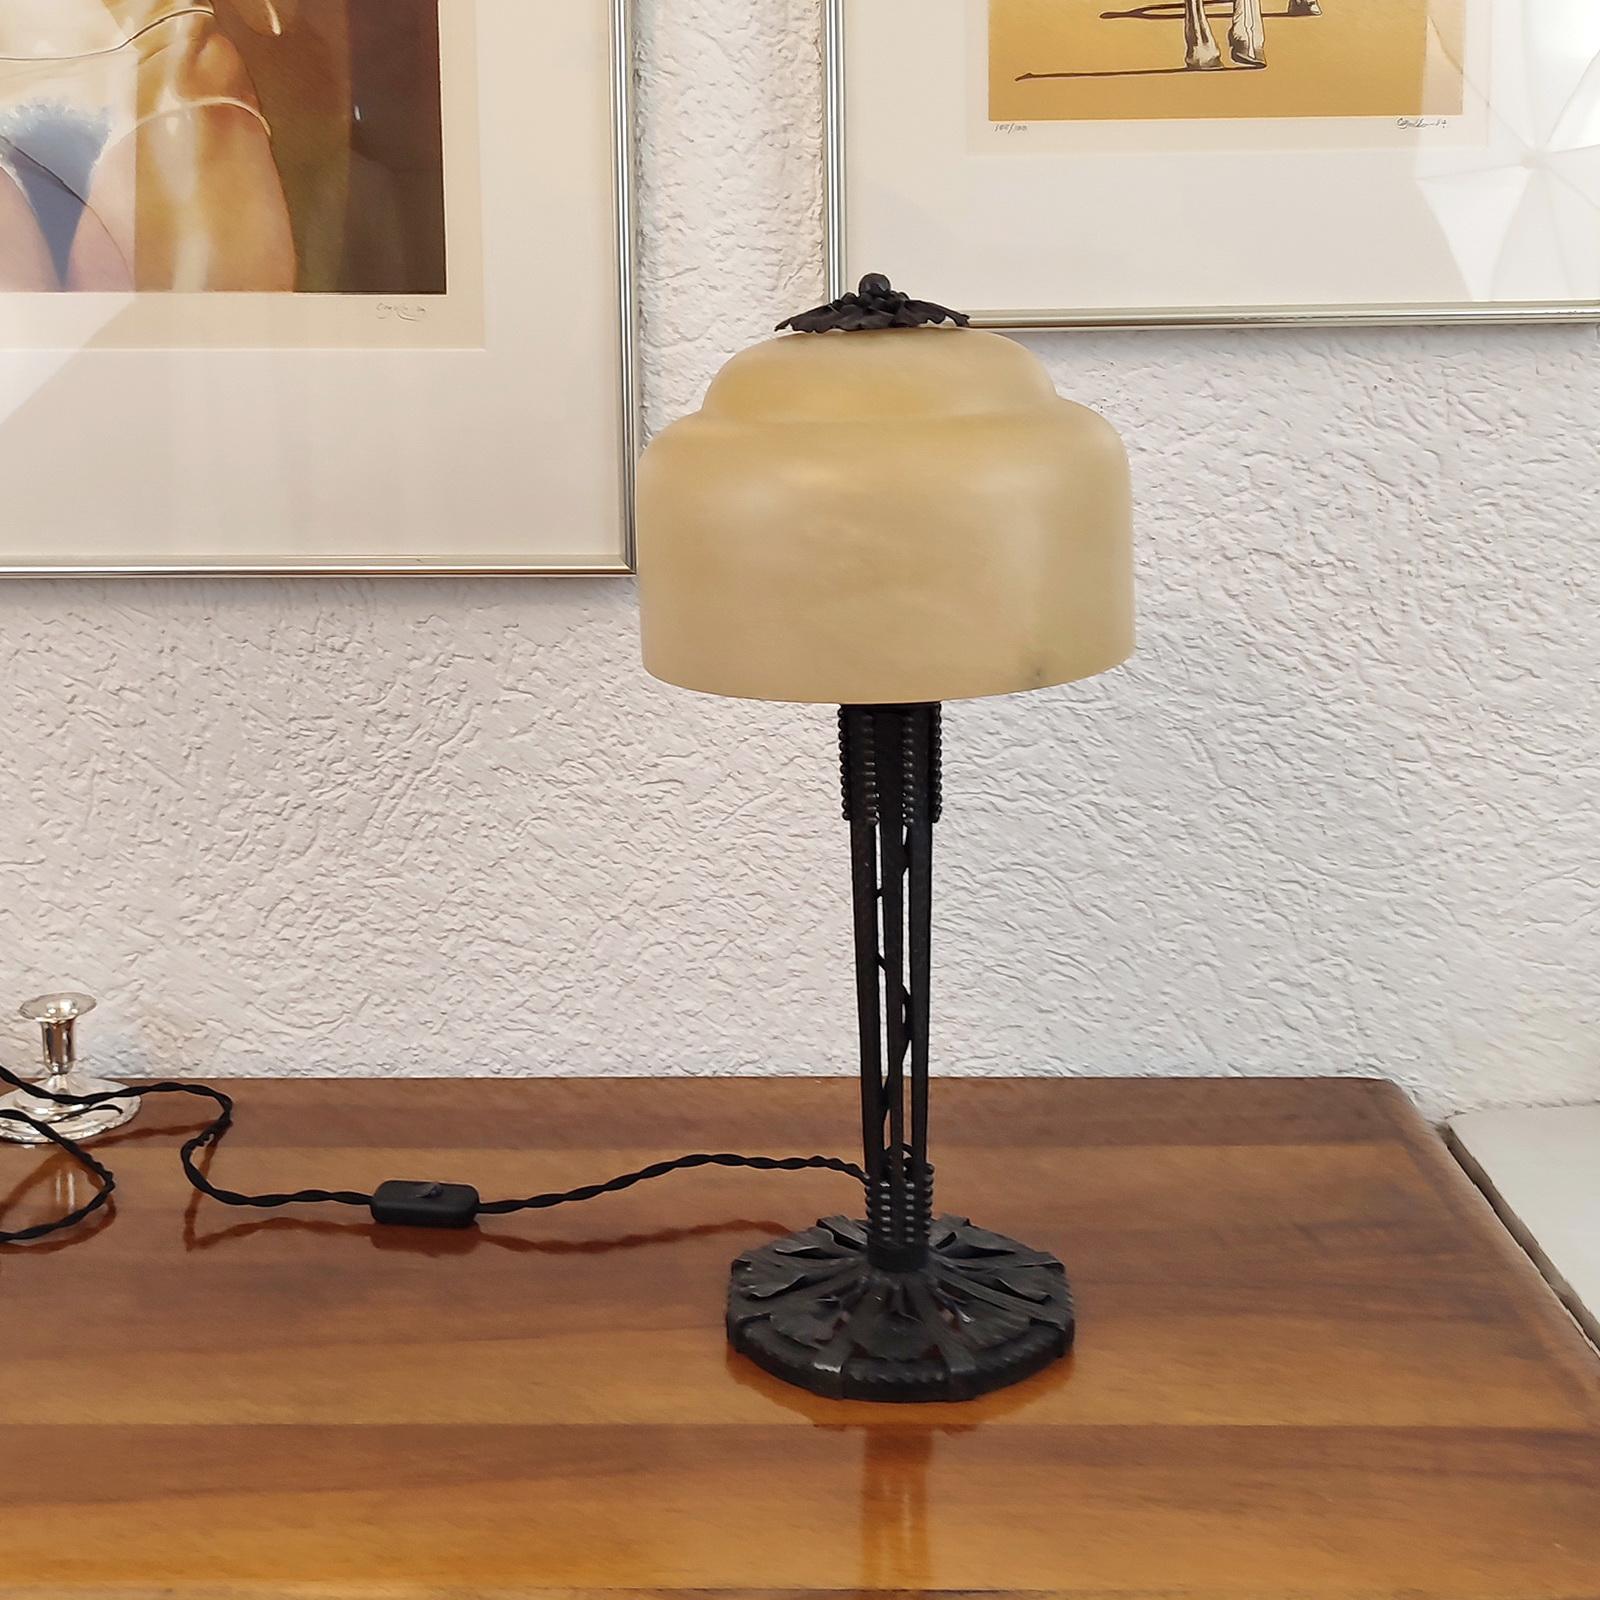 Lampe de table d'Edgar Brandt, en fer forgé, avec abat-jour en albâtre.
Motif des feuilles de ginkgo. Signature tamponnée en bas de page.
Dimensions :
Hauteur 54 cm, diamètre 23 cm
Nettoyé et nouvellement câblé.